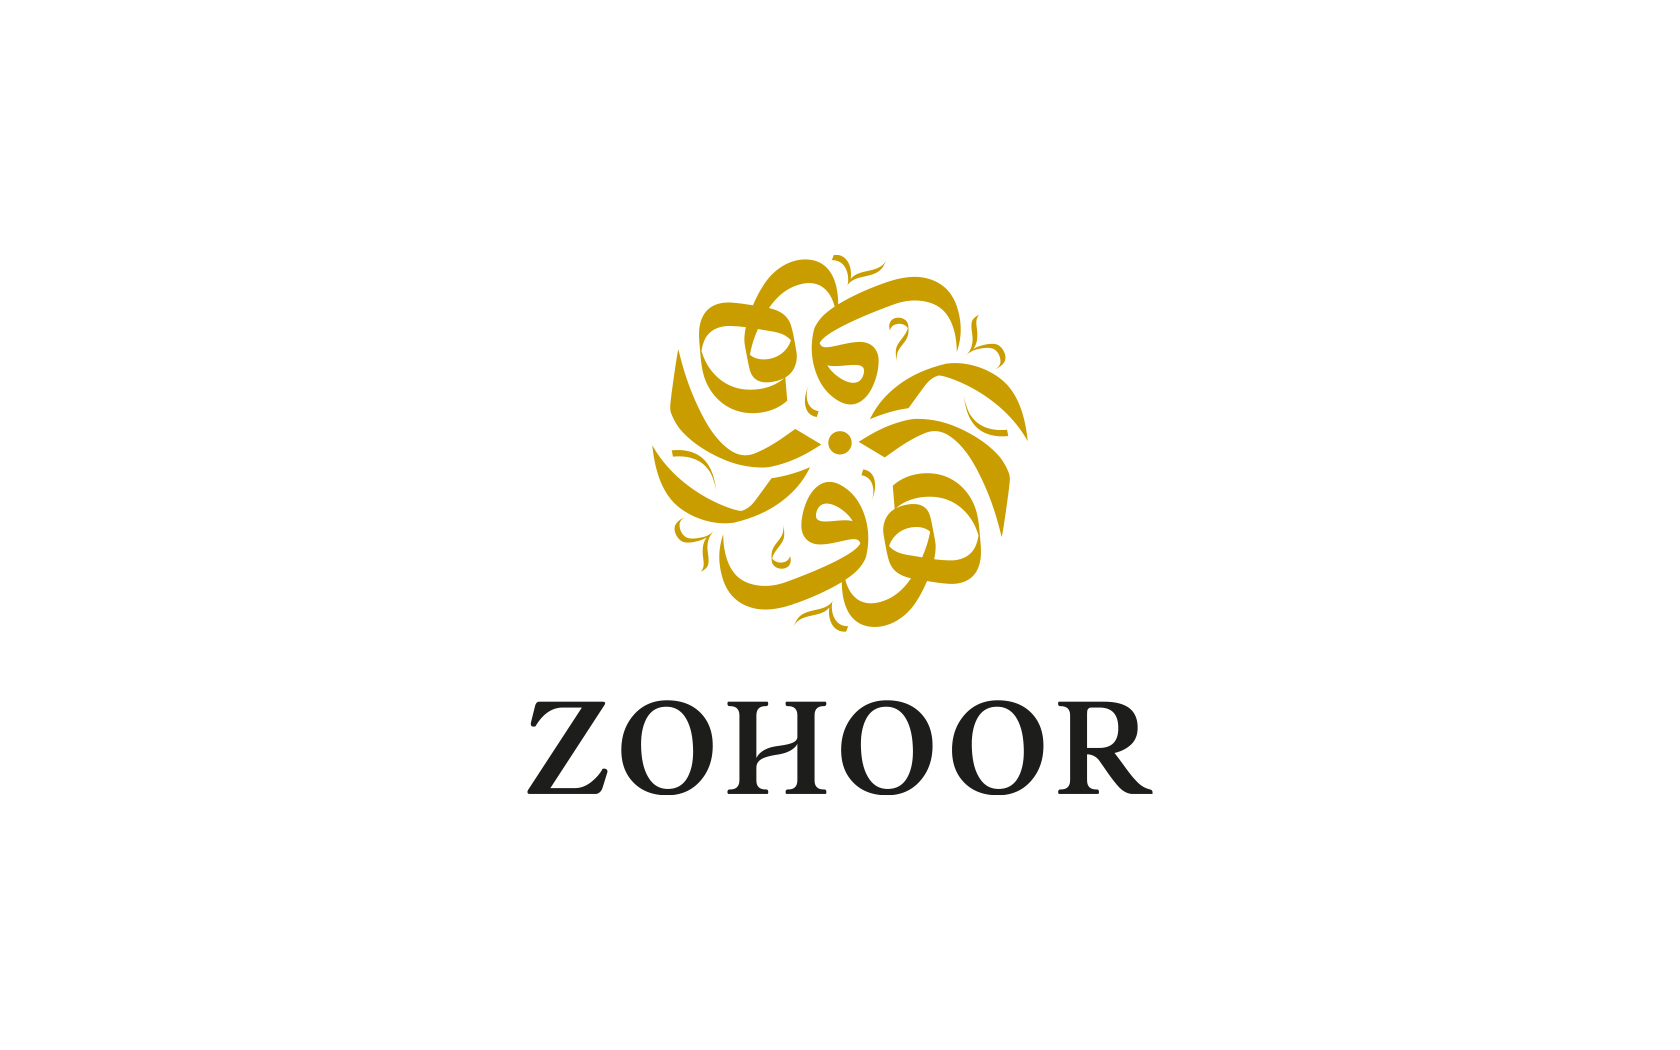 Zohoor. Brand logo in full colour